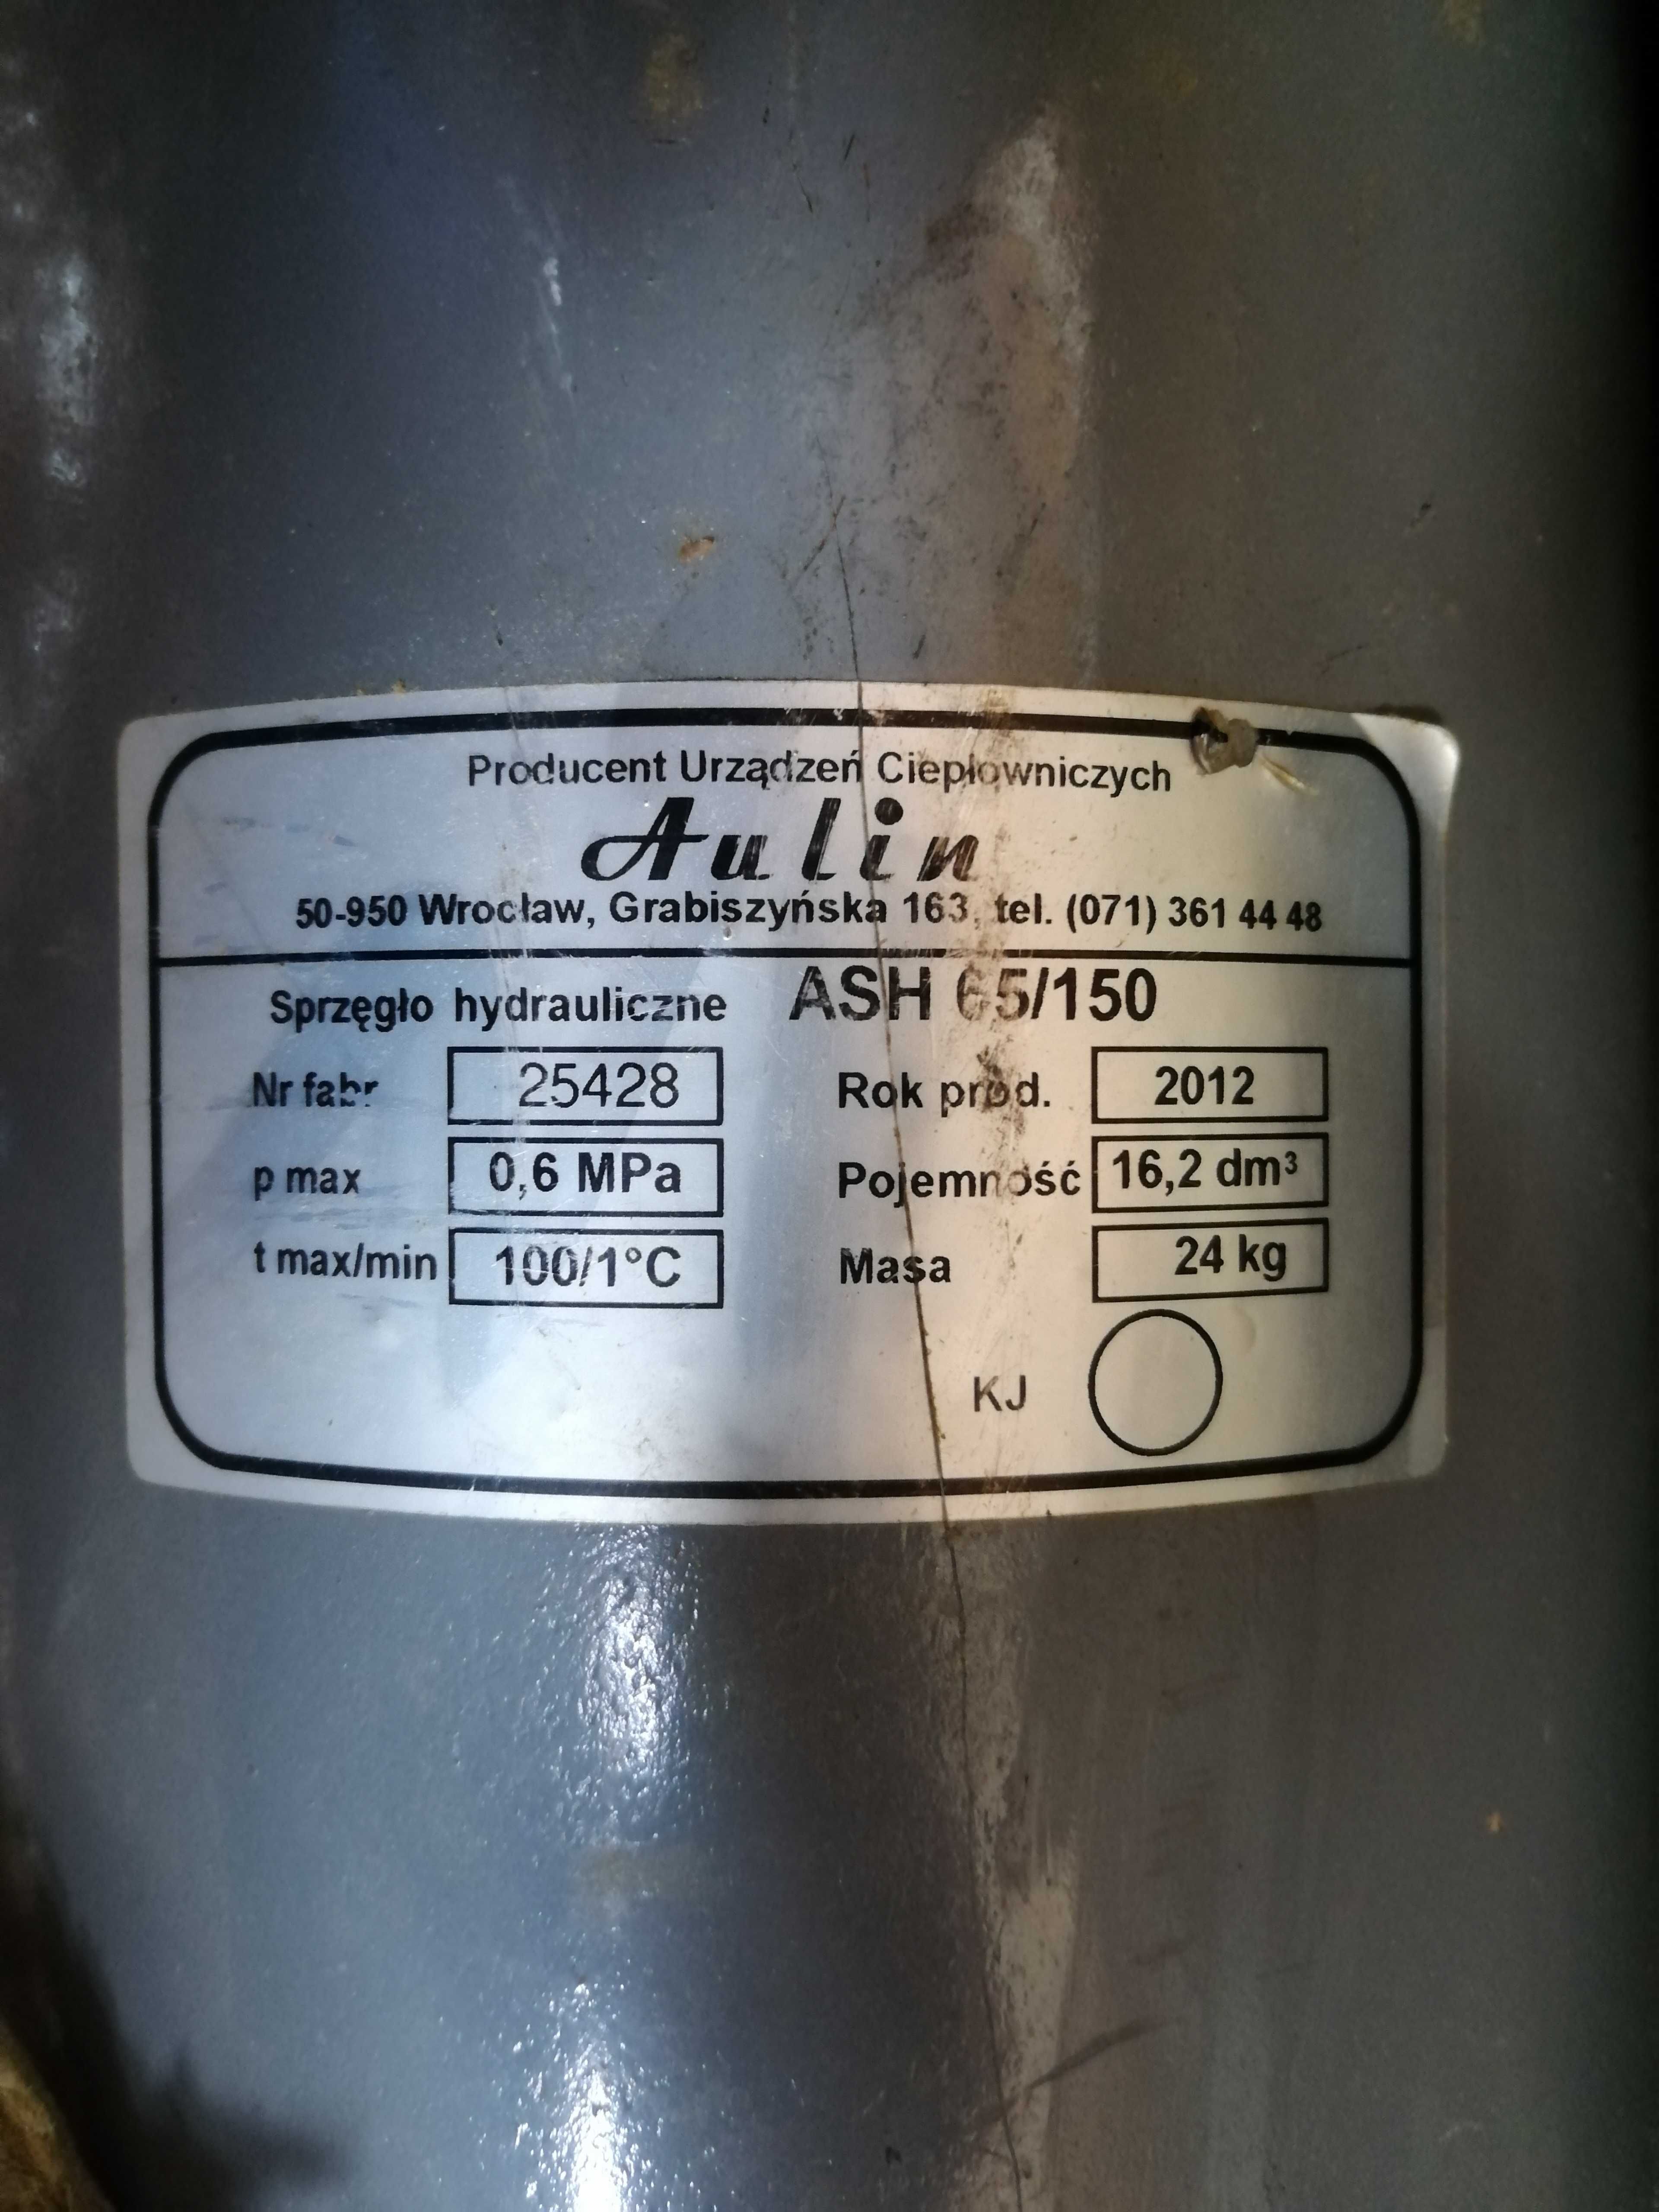 Sprzęgło hydrauliczne Aulin ASH 65/150